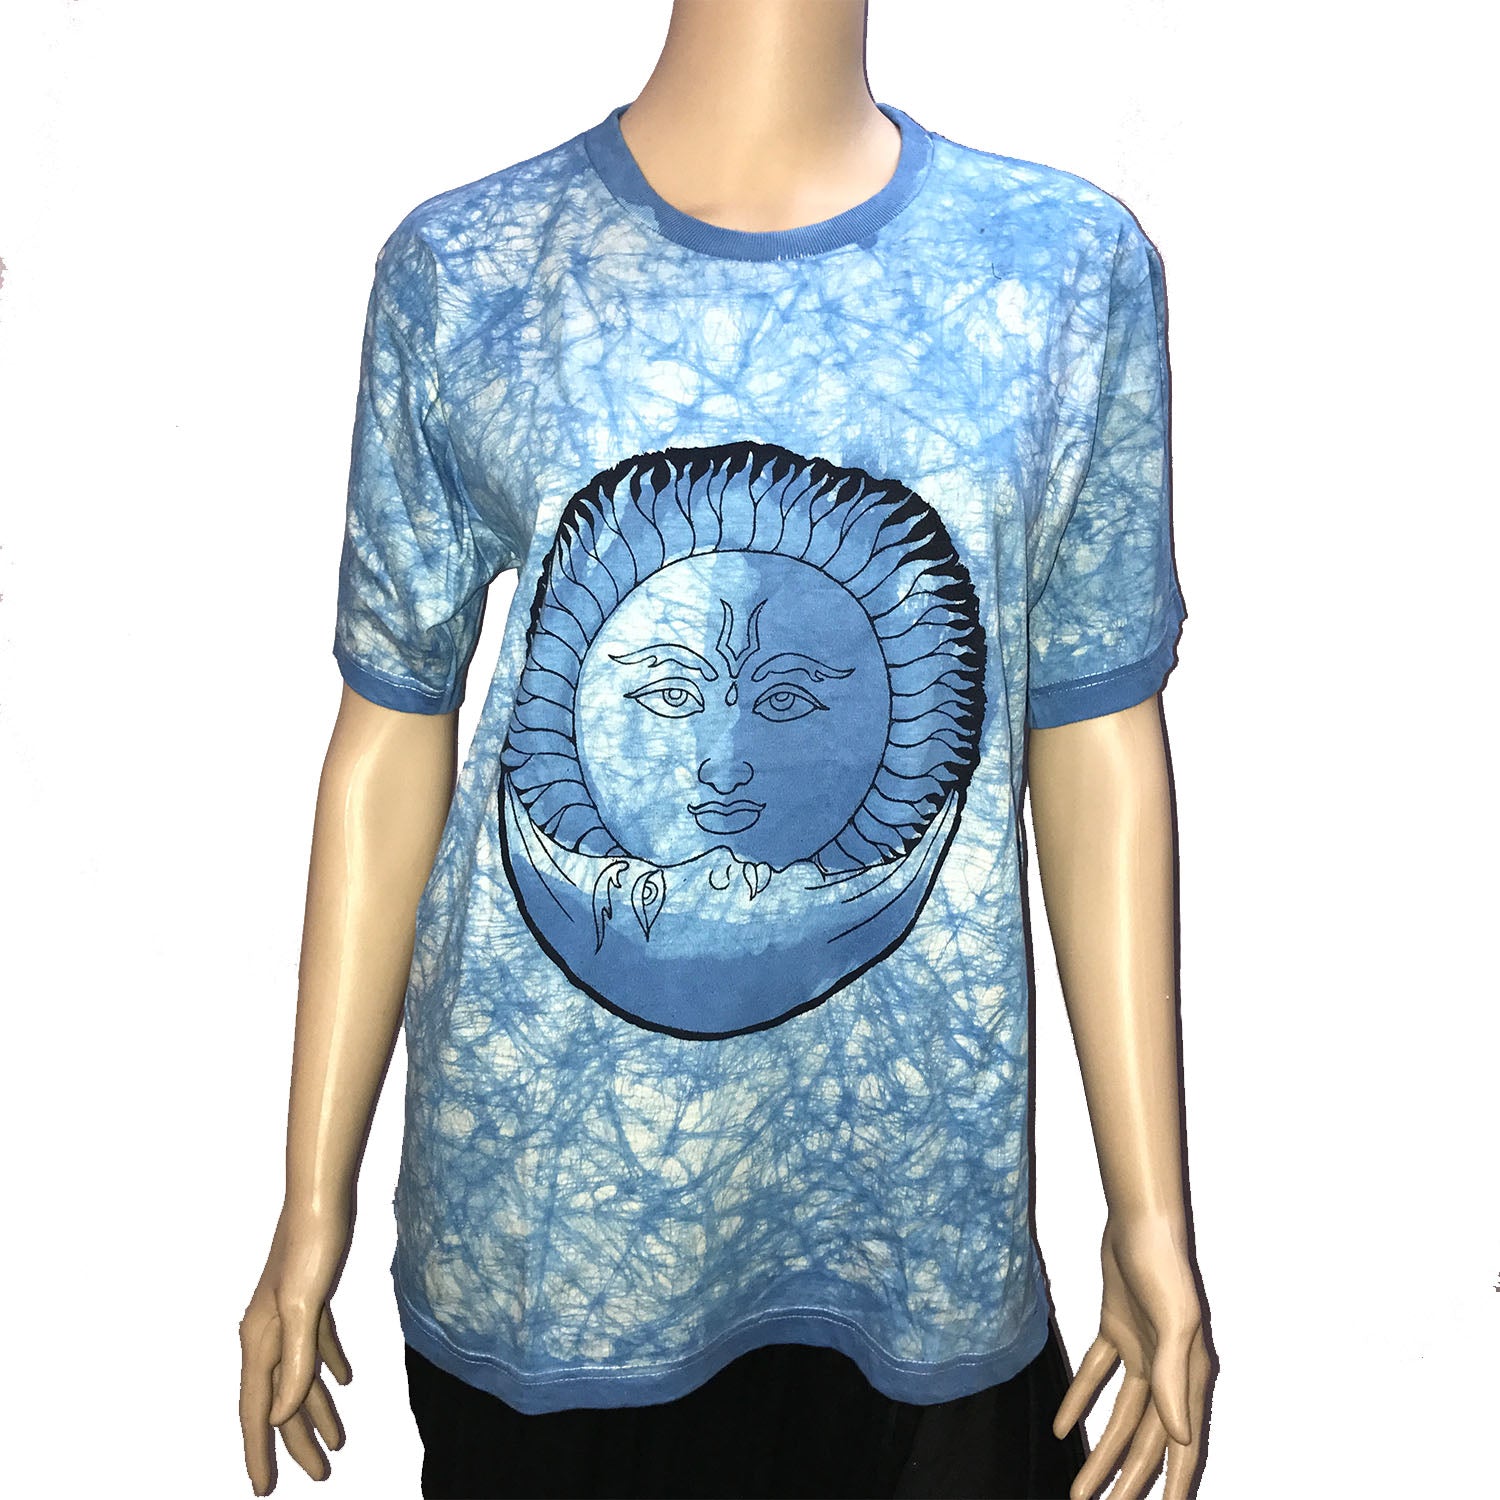 Ganesha Handicrafts, Sun Logo Round Neck Printed T-Shirt, Sun Logo Printed T-Shirt, Round Neck Printed T-Shirt, Trending Round Neck T-Shirt.